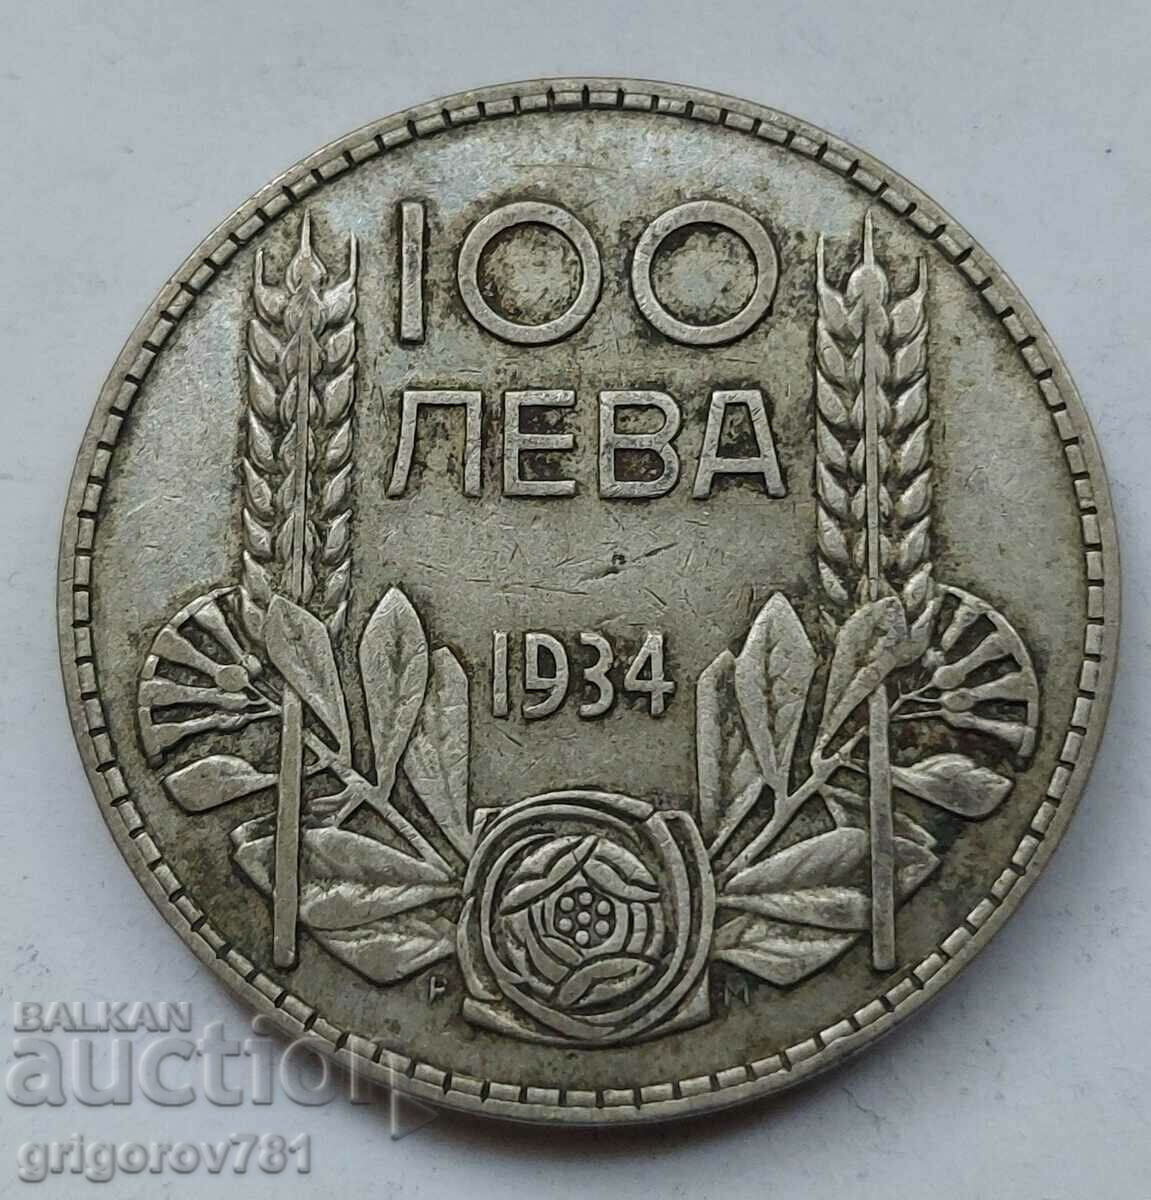 Ασήμι 100 λέβα Βουλγαρία 1934 - ασημένιο νόμισμα #67